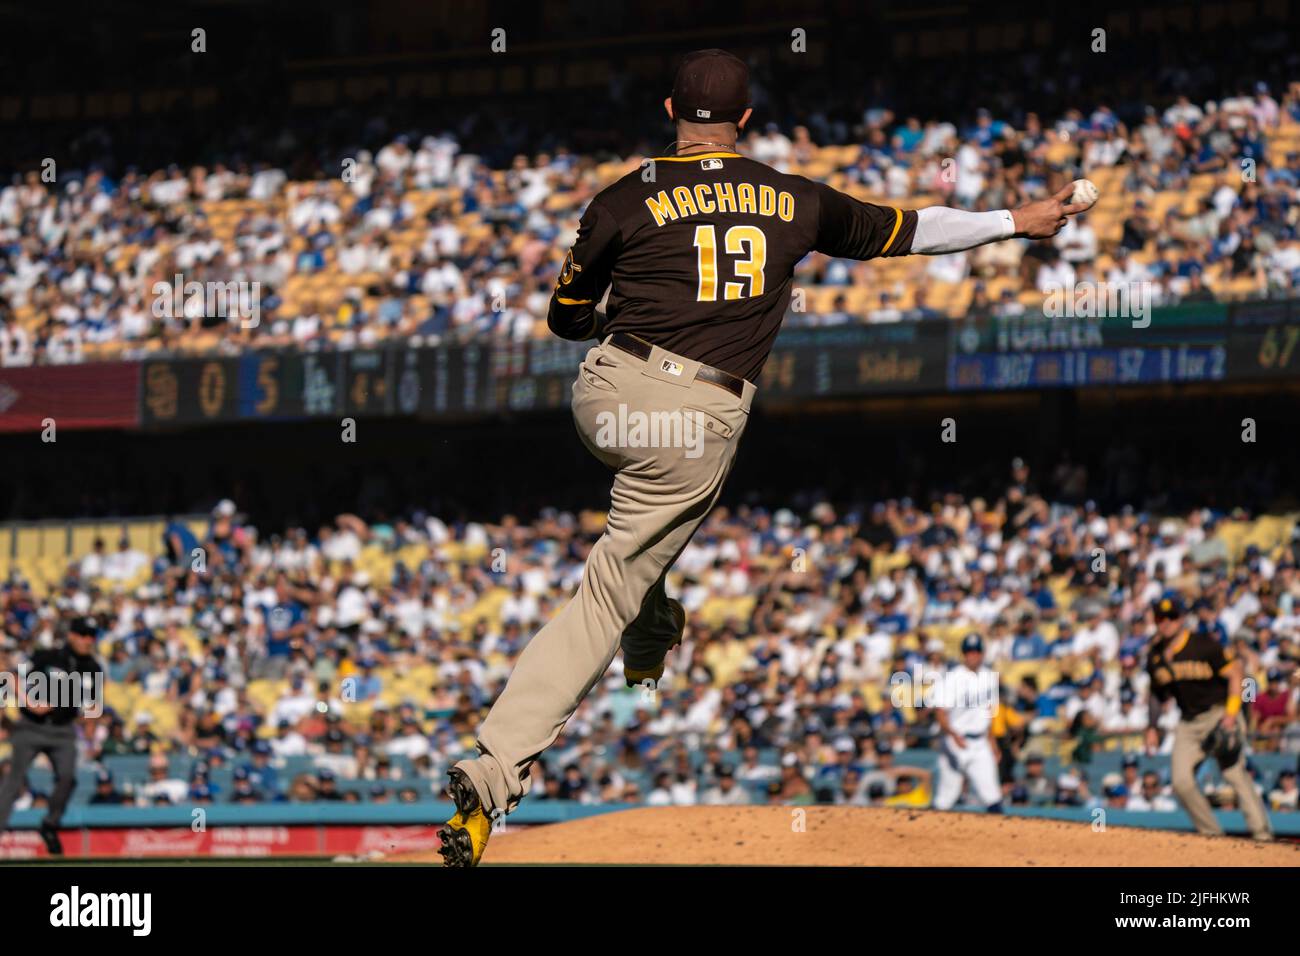 Il terzo baseman Manny Machado di San Diego Padres (13) getta alla prima base per un fuori durante una partita della MLB contro i Los Angeles Dodgers, sabato 2 luglio, Foto Stock